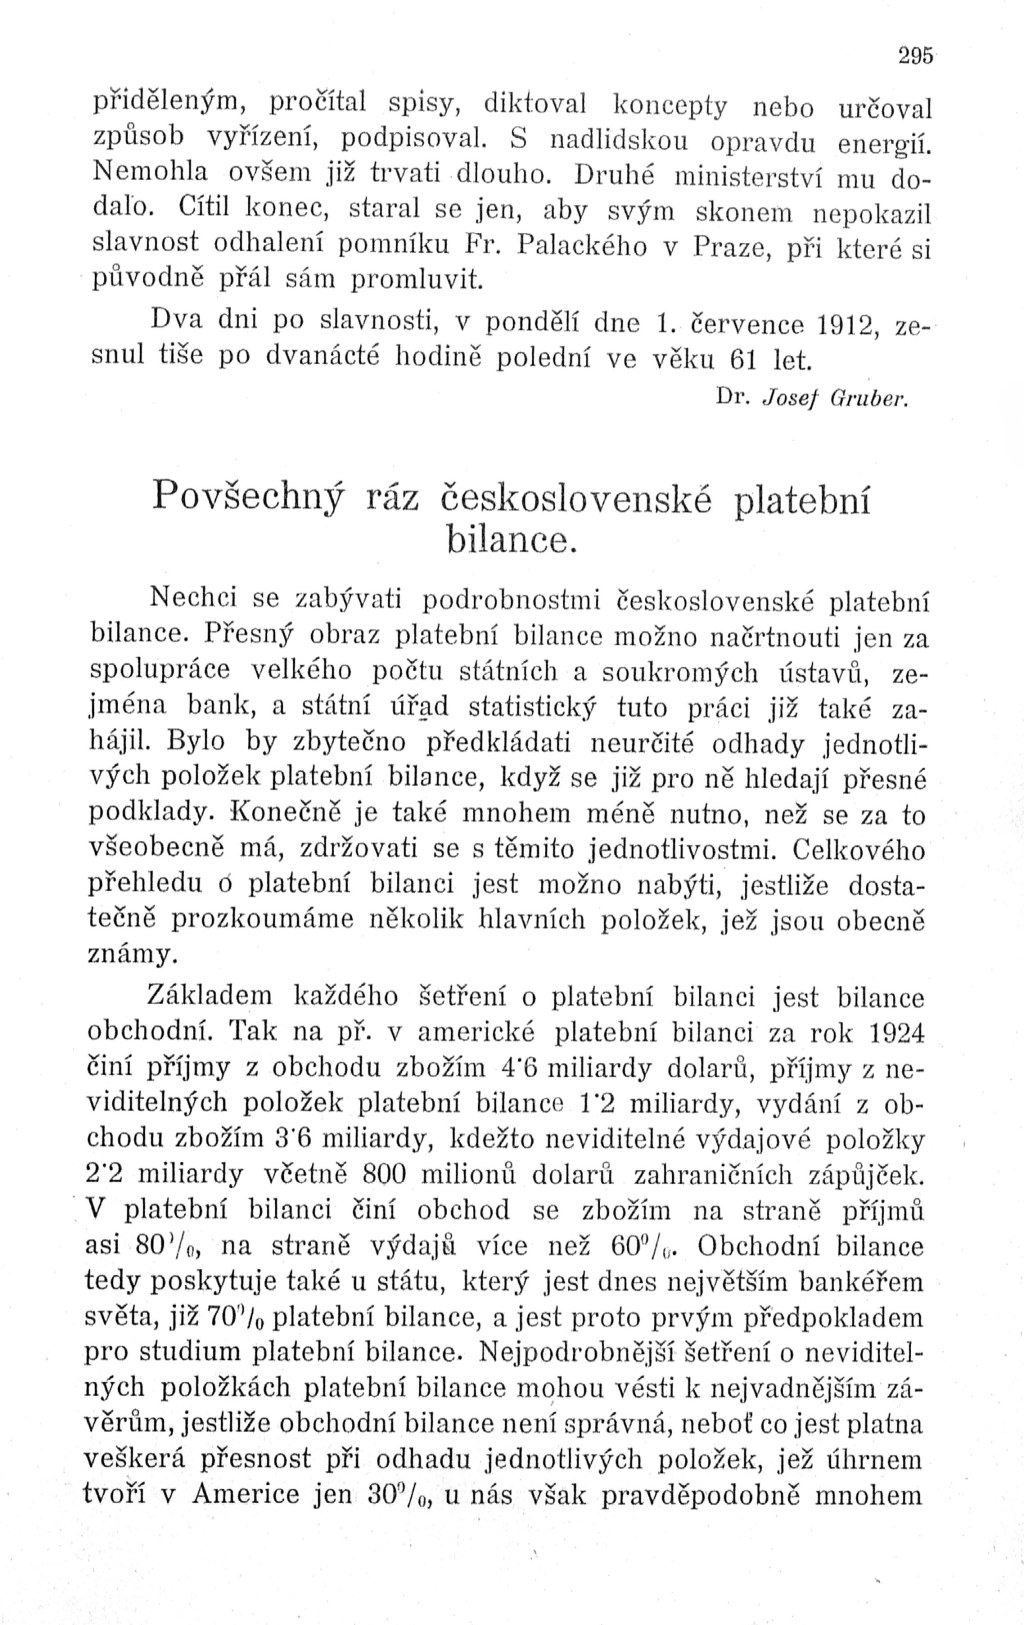 Povšechný ráz československé platební bilance